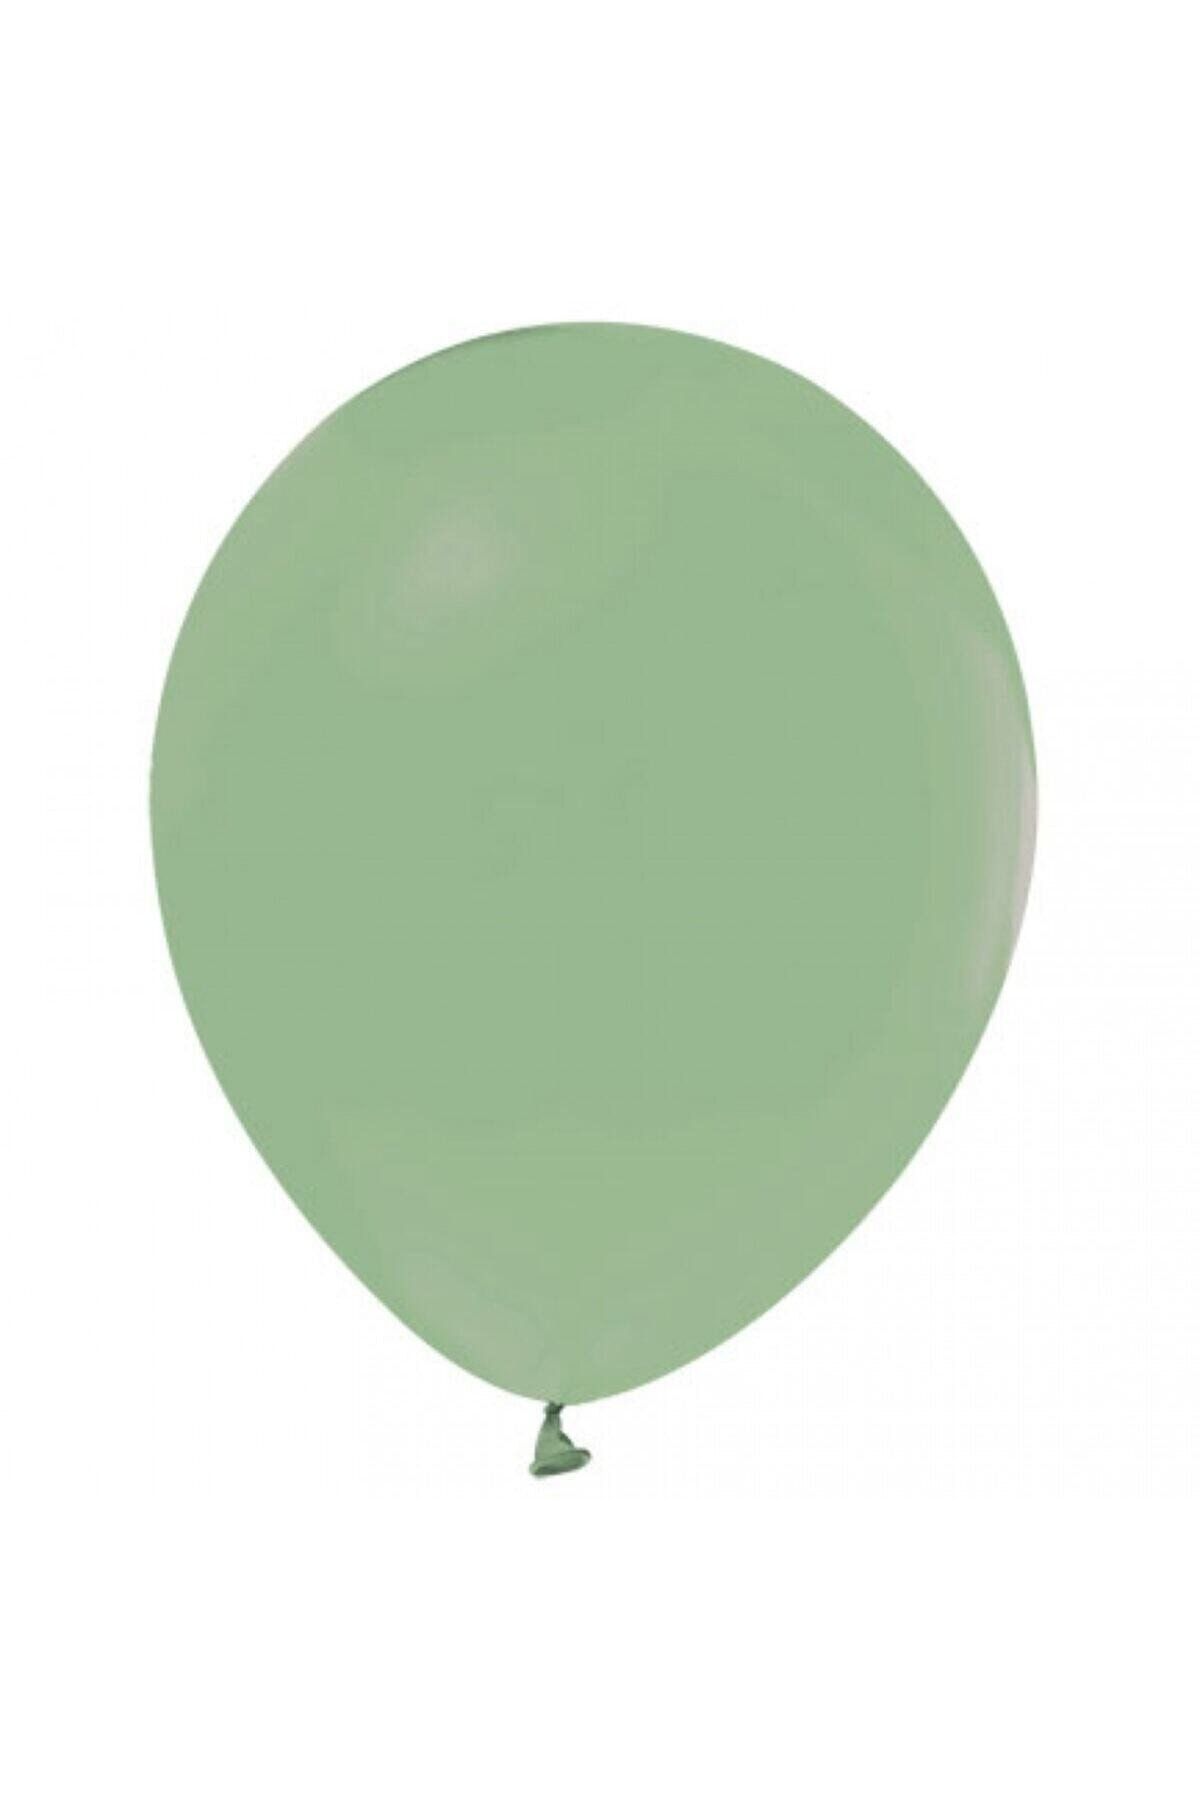 HKNYS 50 Adet Kuf Yeşili Soft Renk Pastel Balon-+ Balon Zinciri Balon Bandı Hediye